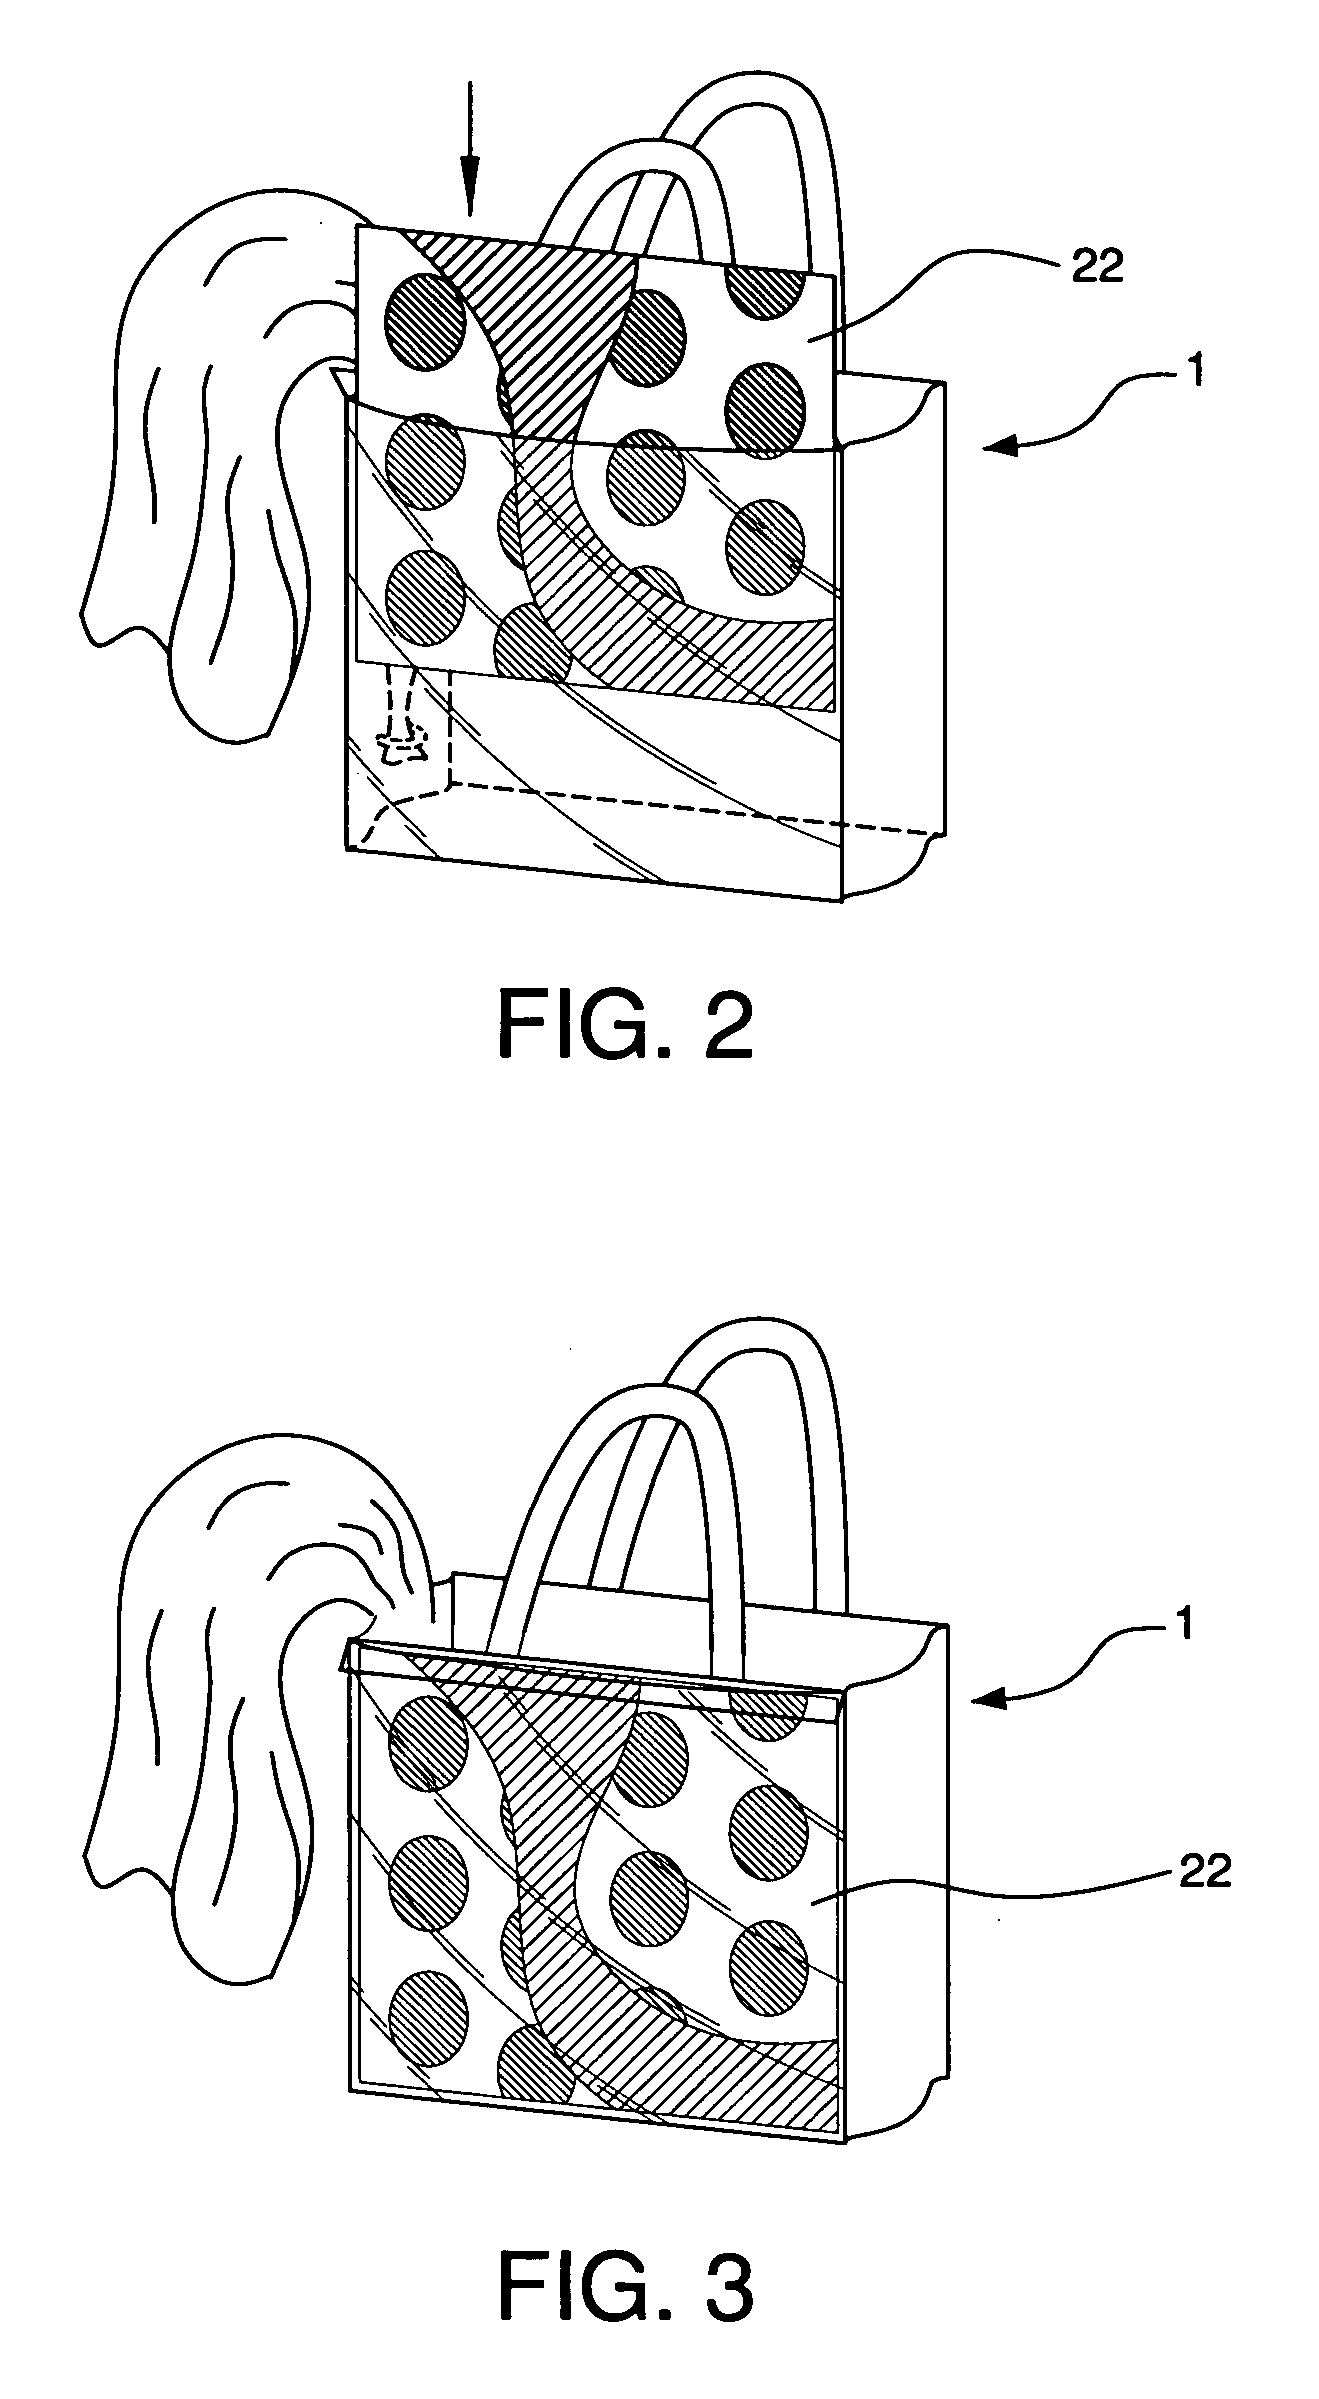 Interchangeable handbag design method